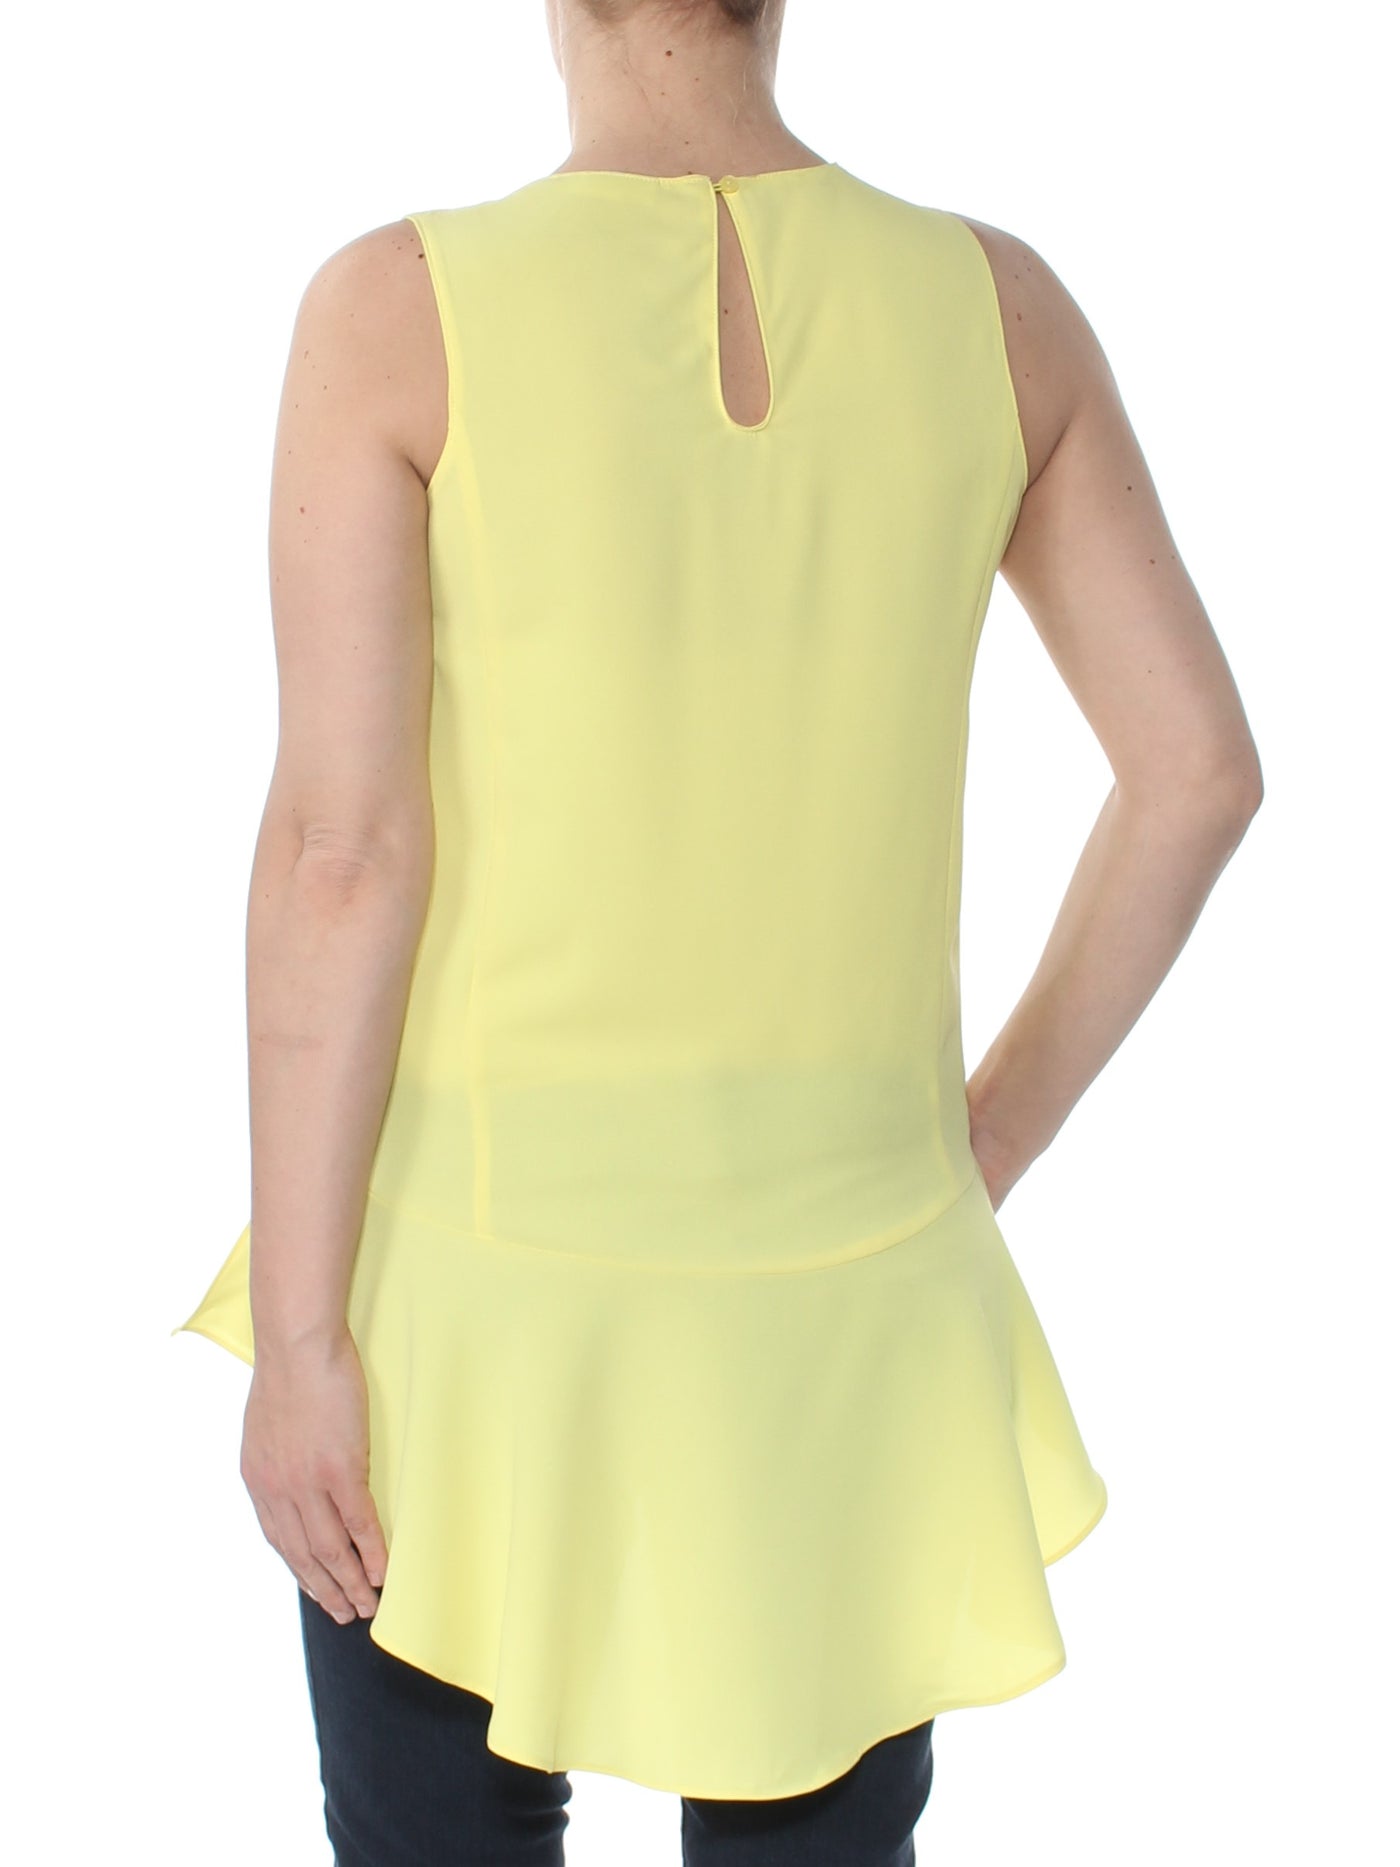 BAR III Womens Yellow Peplum Sleeveless Jewel Neck Hi-Lo Top